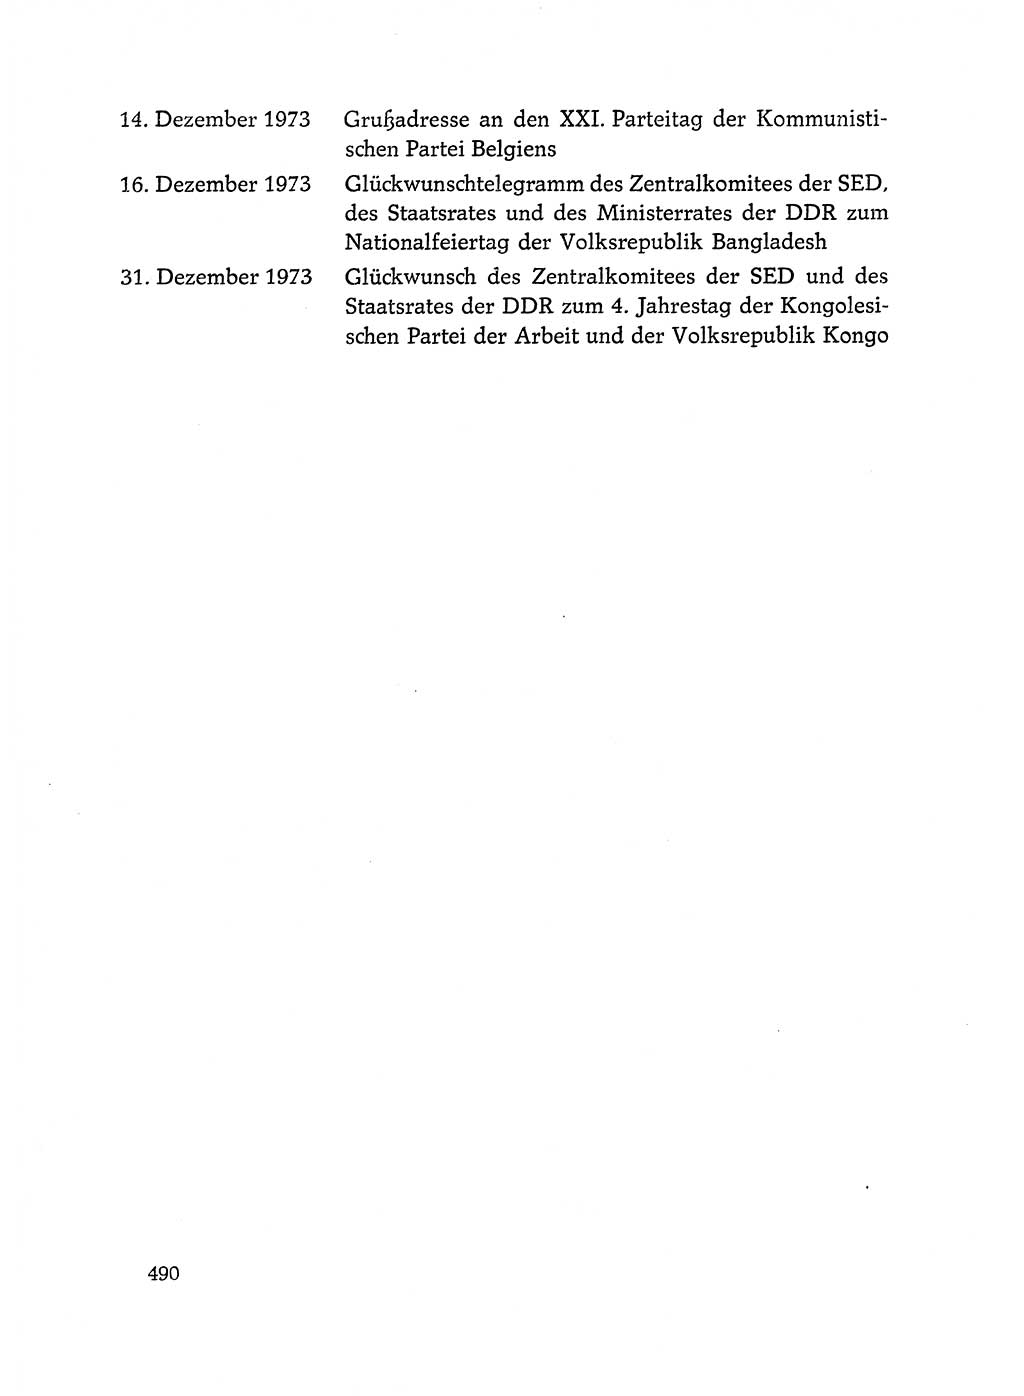 Dokumente der Sozialistischen Einheitspartei Deutschlands (SED) [Deutsche Demokratische Republik (DDR)] 1972-1973, Seite 490 (Dok. SED DDR 1972-1973, S. 490)